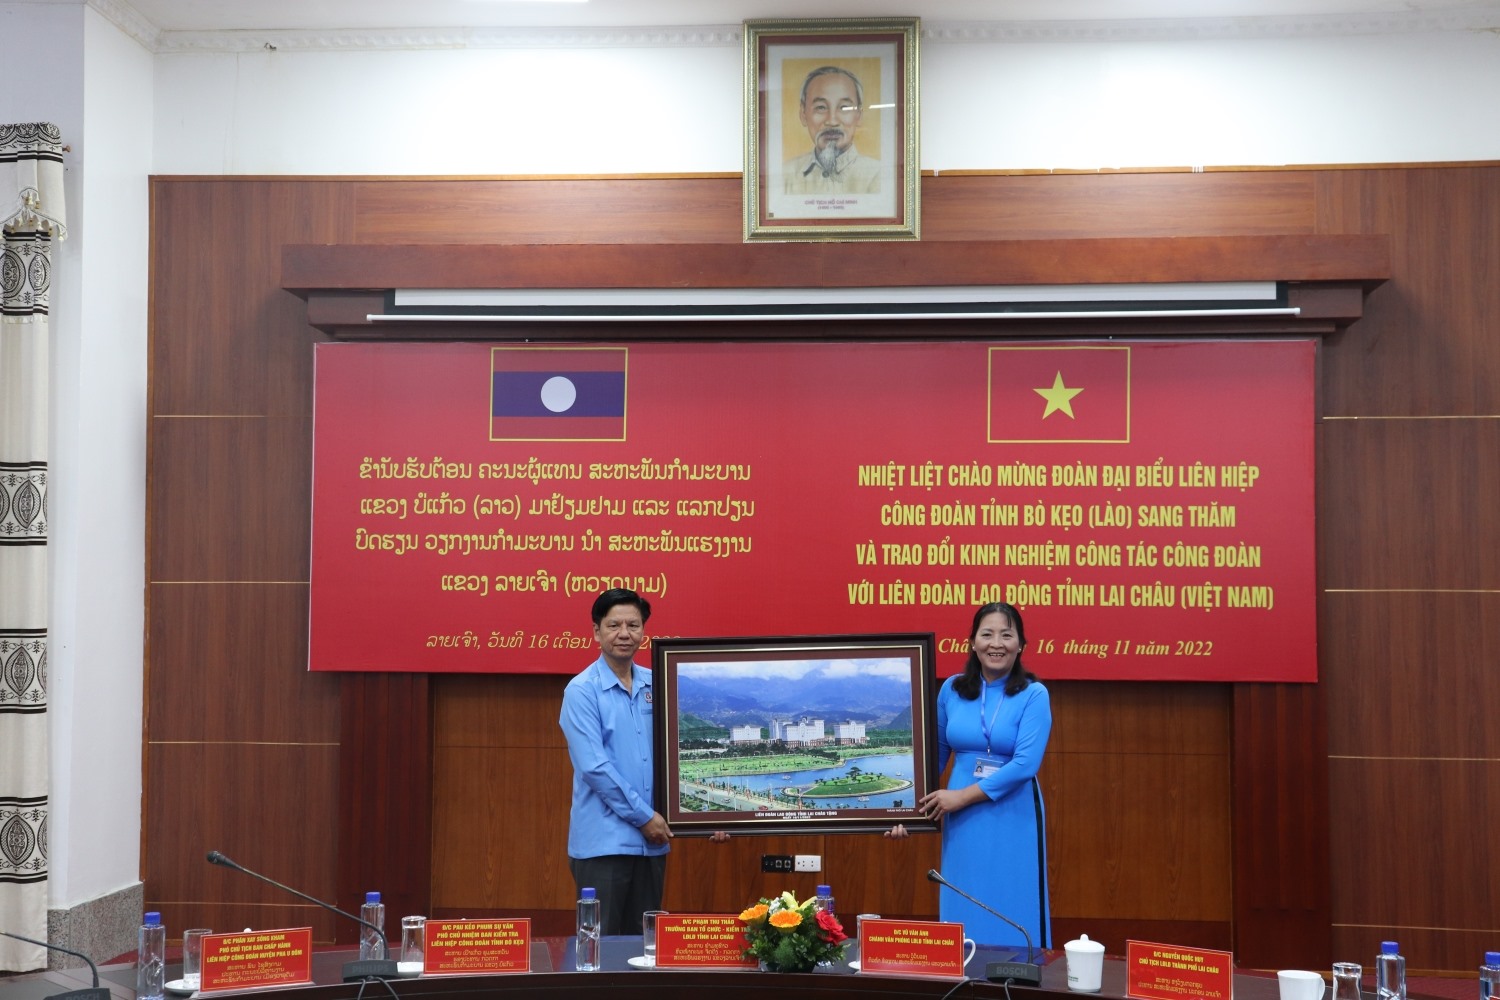 Lãnh đạo Liên đoàn Lao động tỉnh Lai Châu tặng quà kỷ niệm cho phía Công đoàn